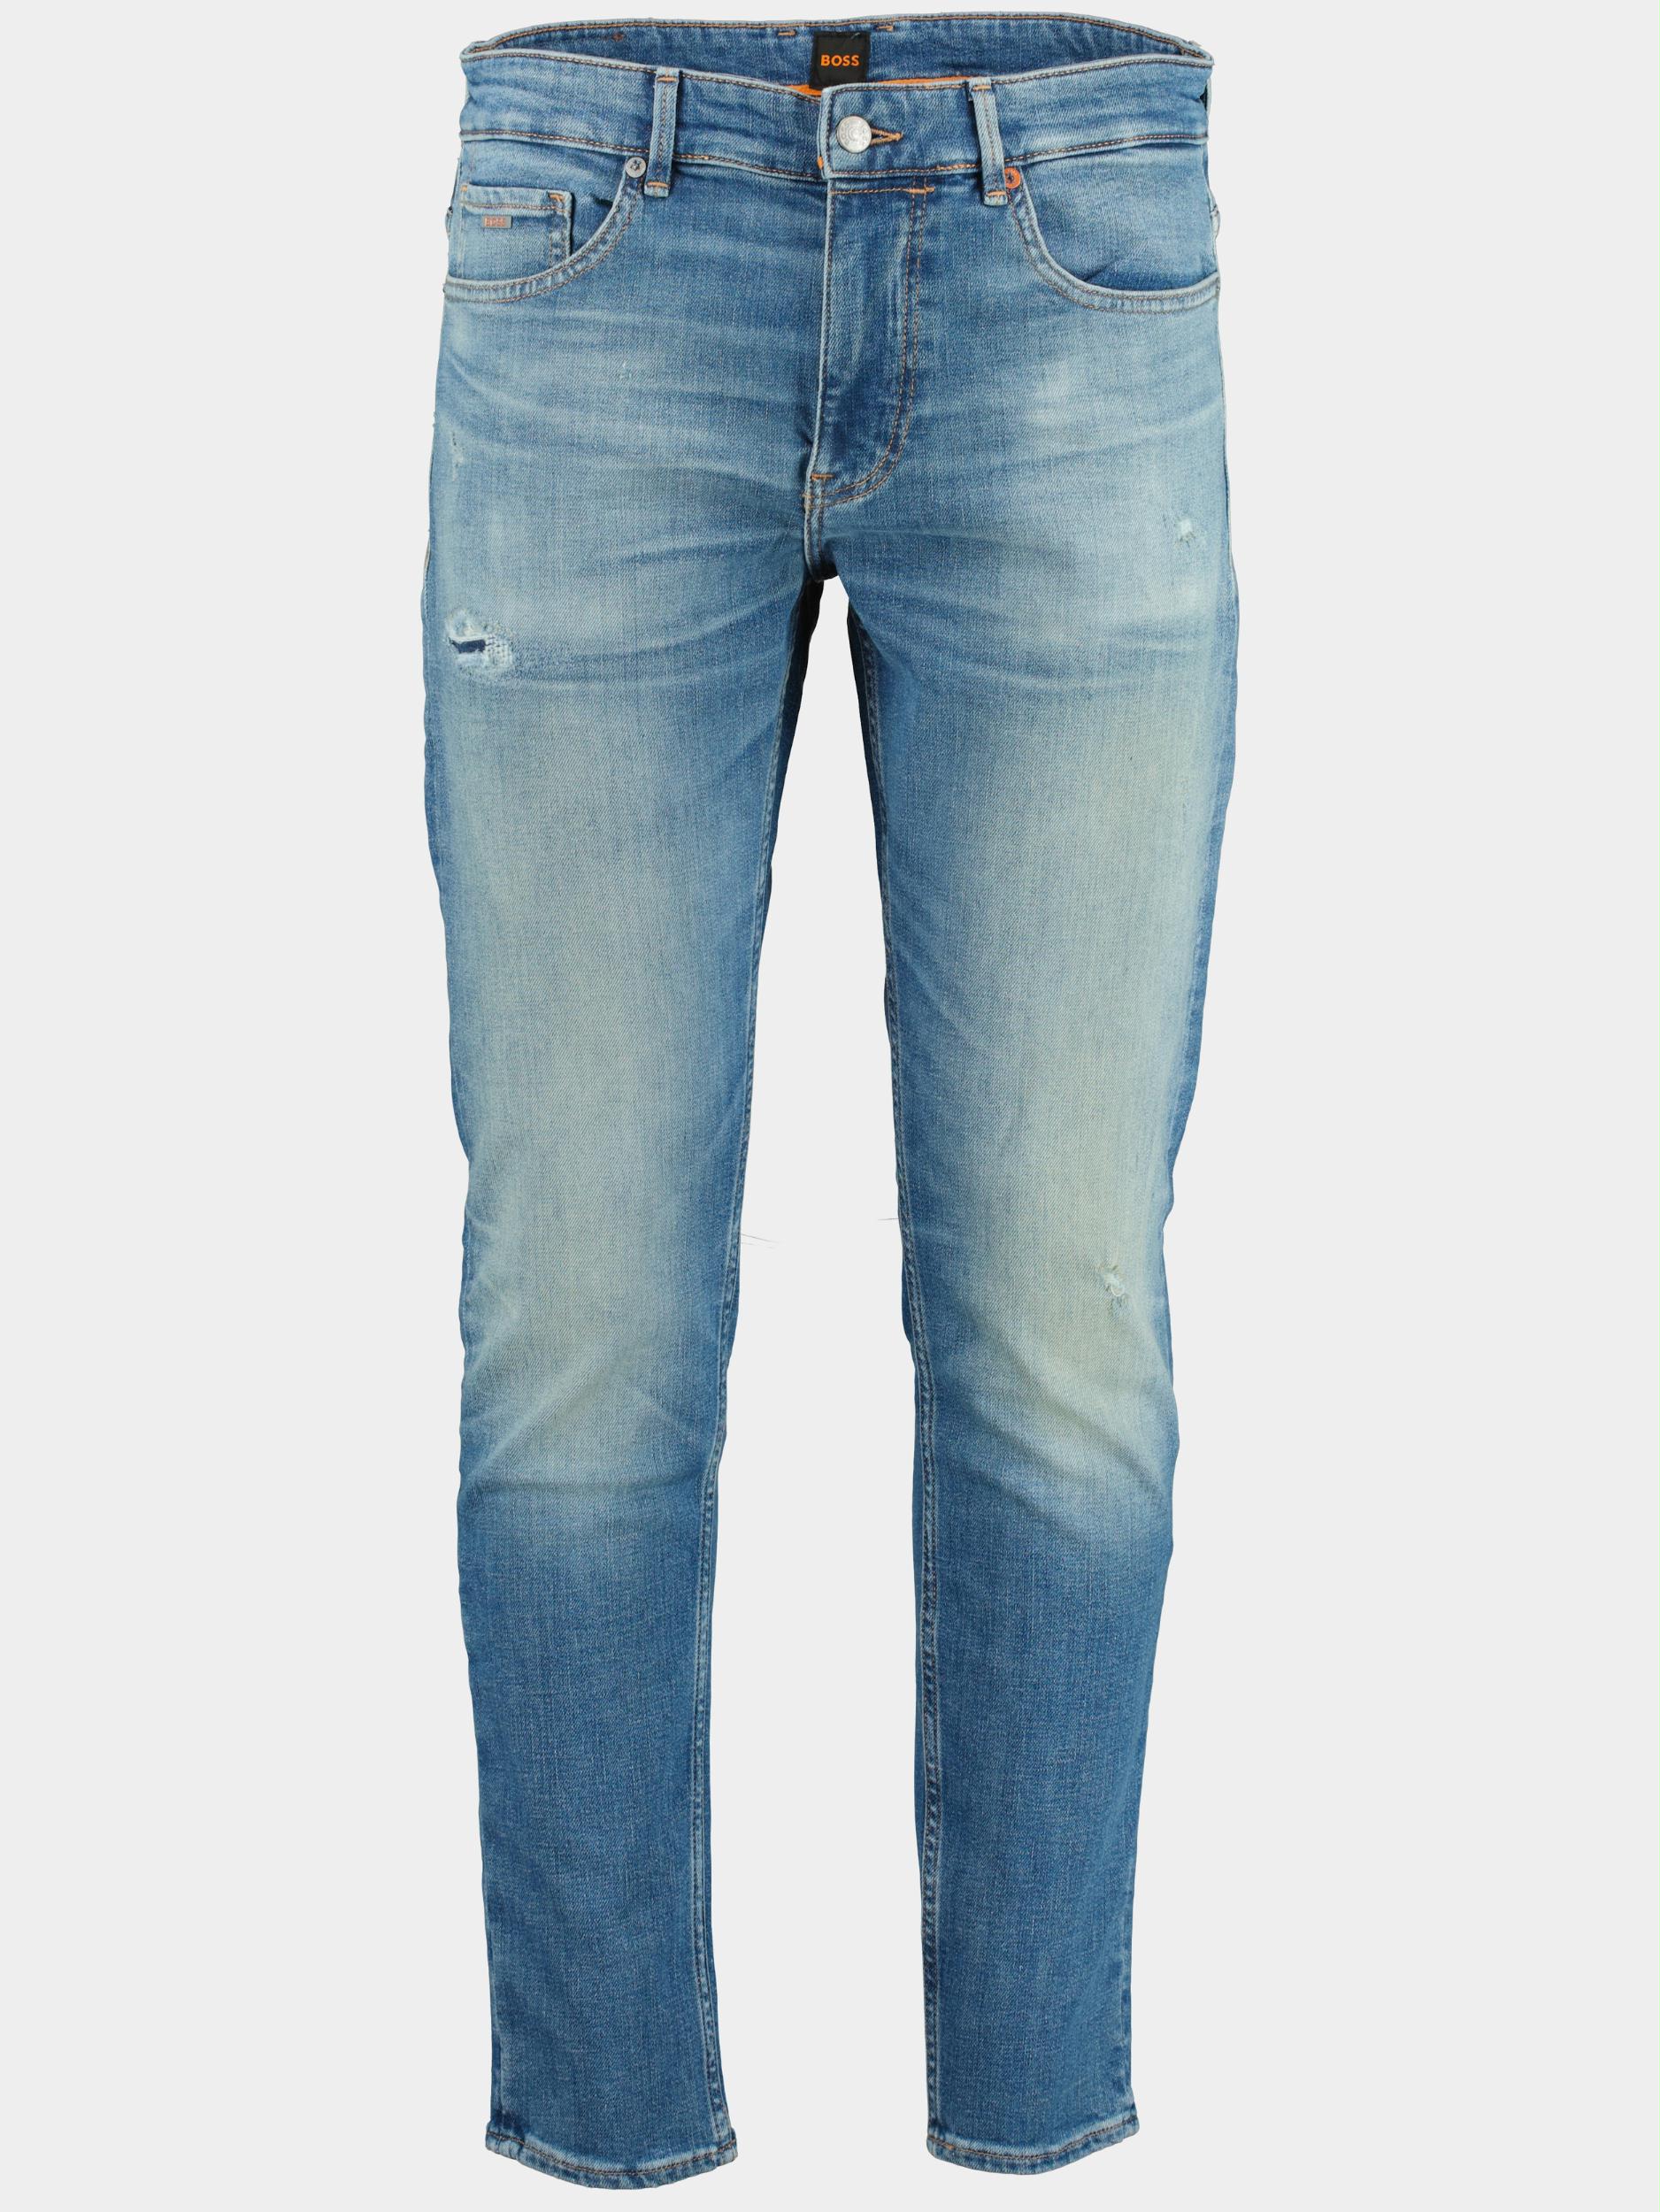 Hugo Boss Jeans | Online Kopen | Men Shop